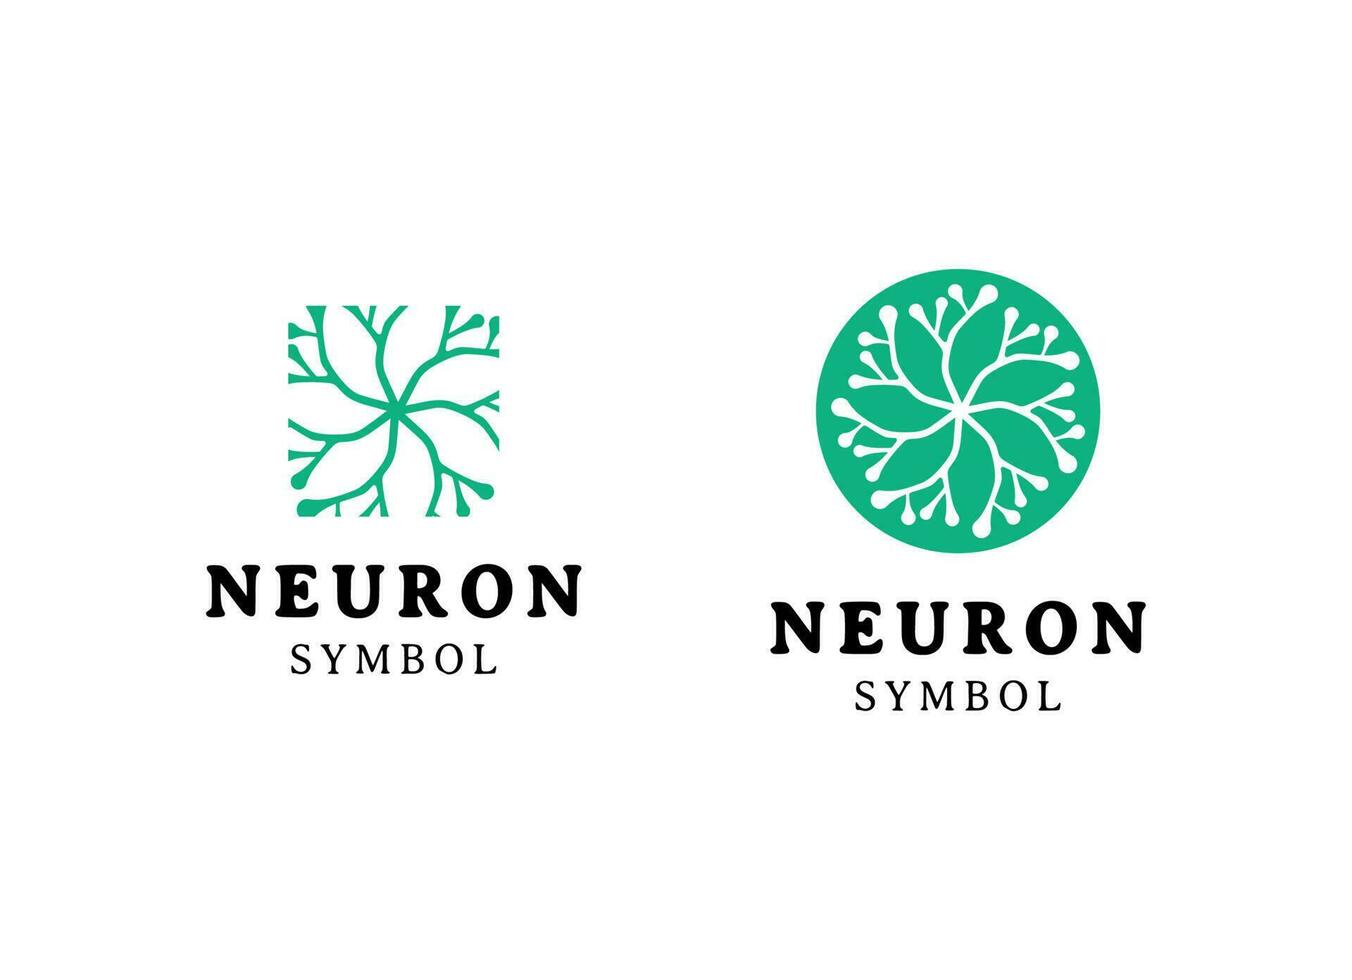 abstract neuron logo sjabloon vector